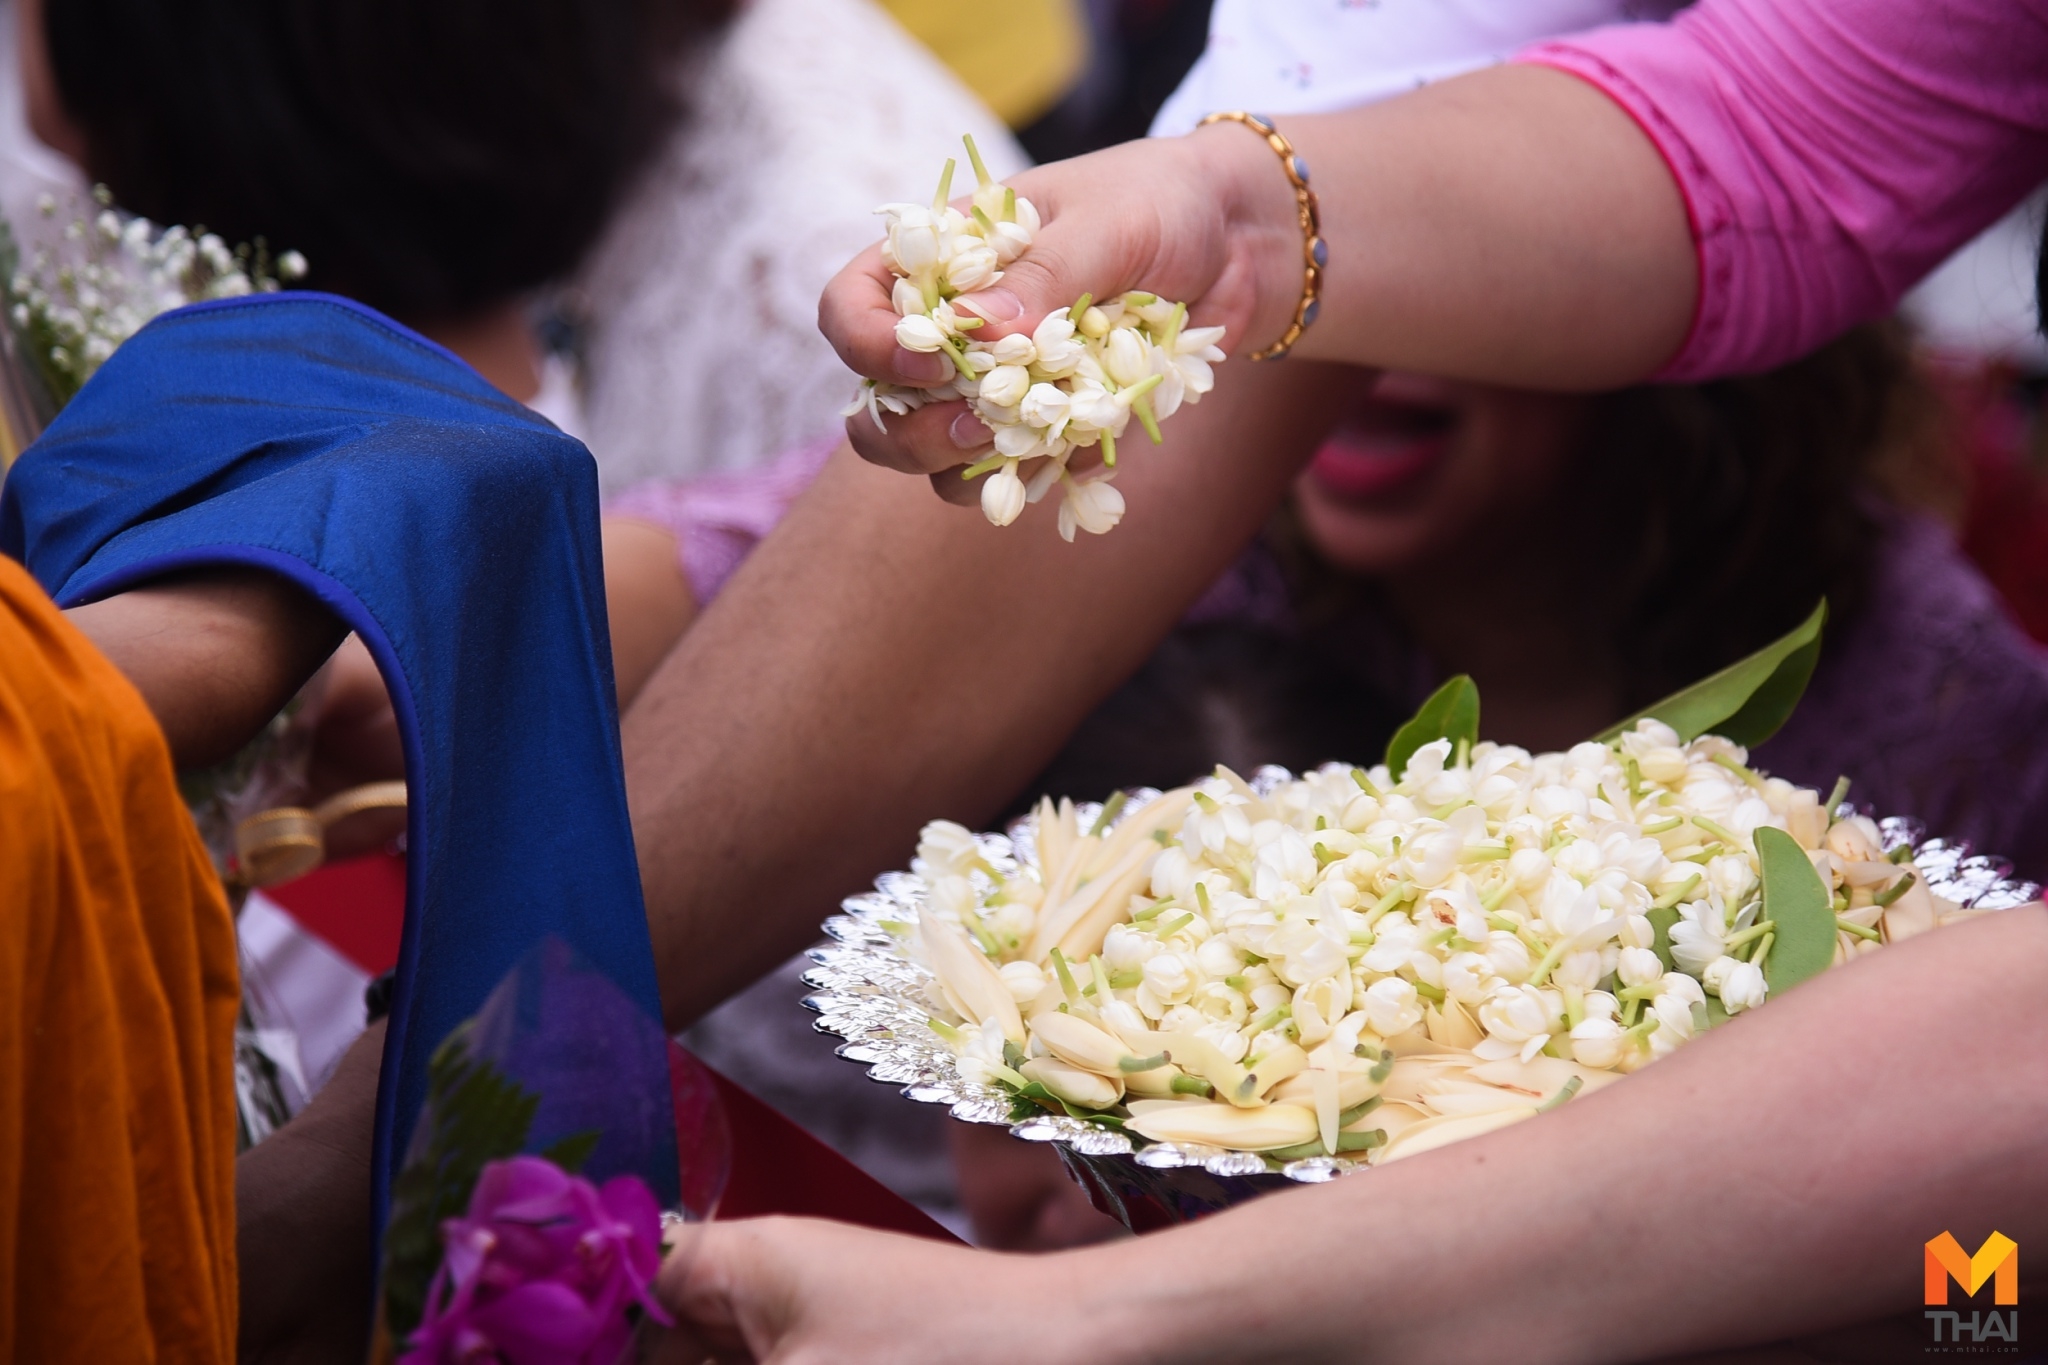 พุทธศาสนิกชน ร่วมตักบาตรดอกไม้ วันอาสาฬหบูชา